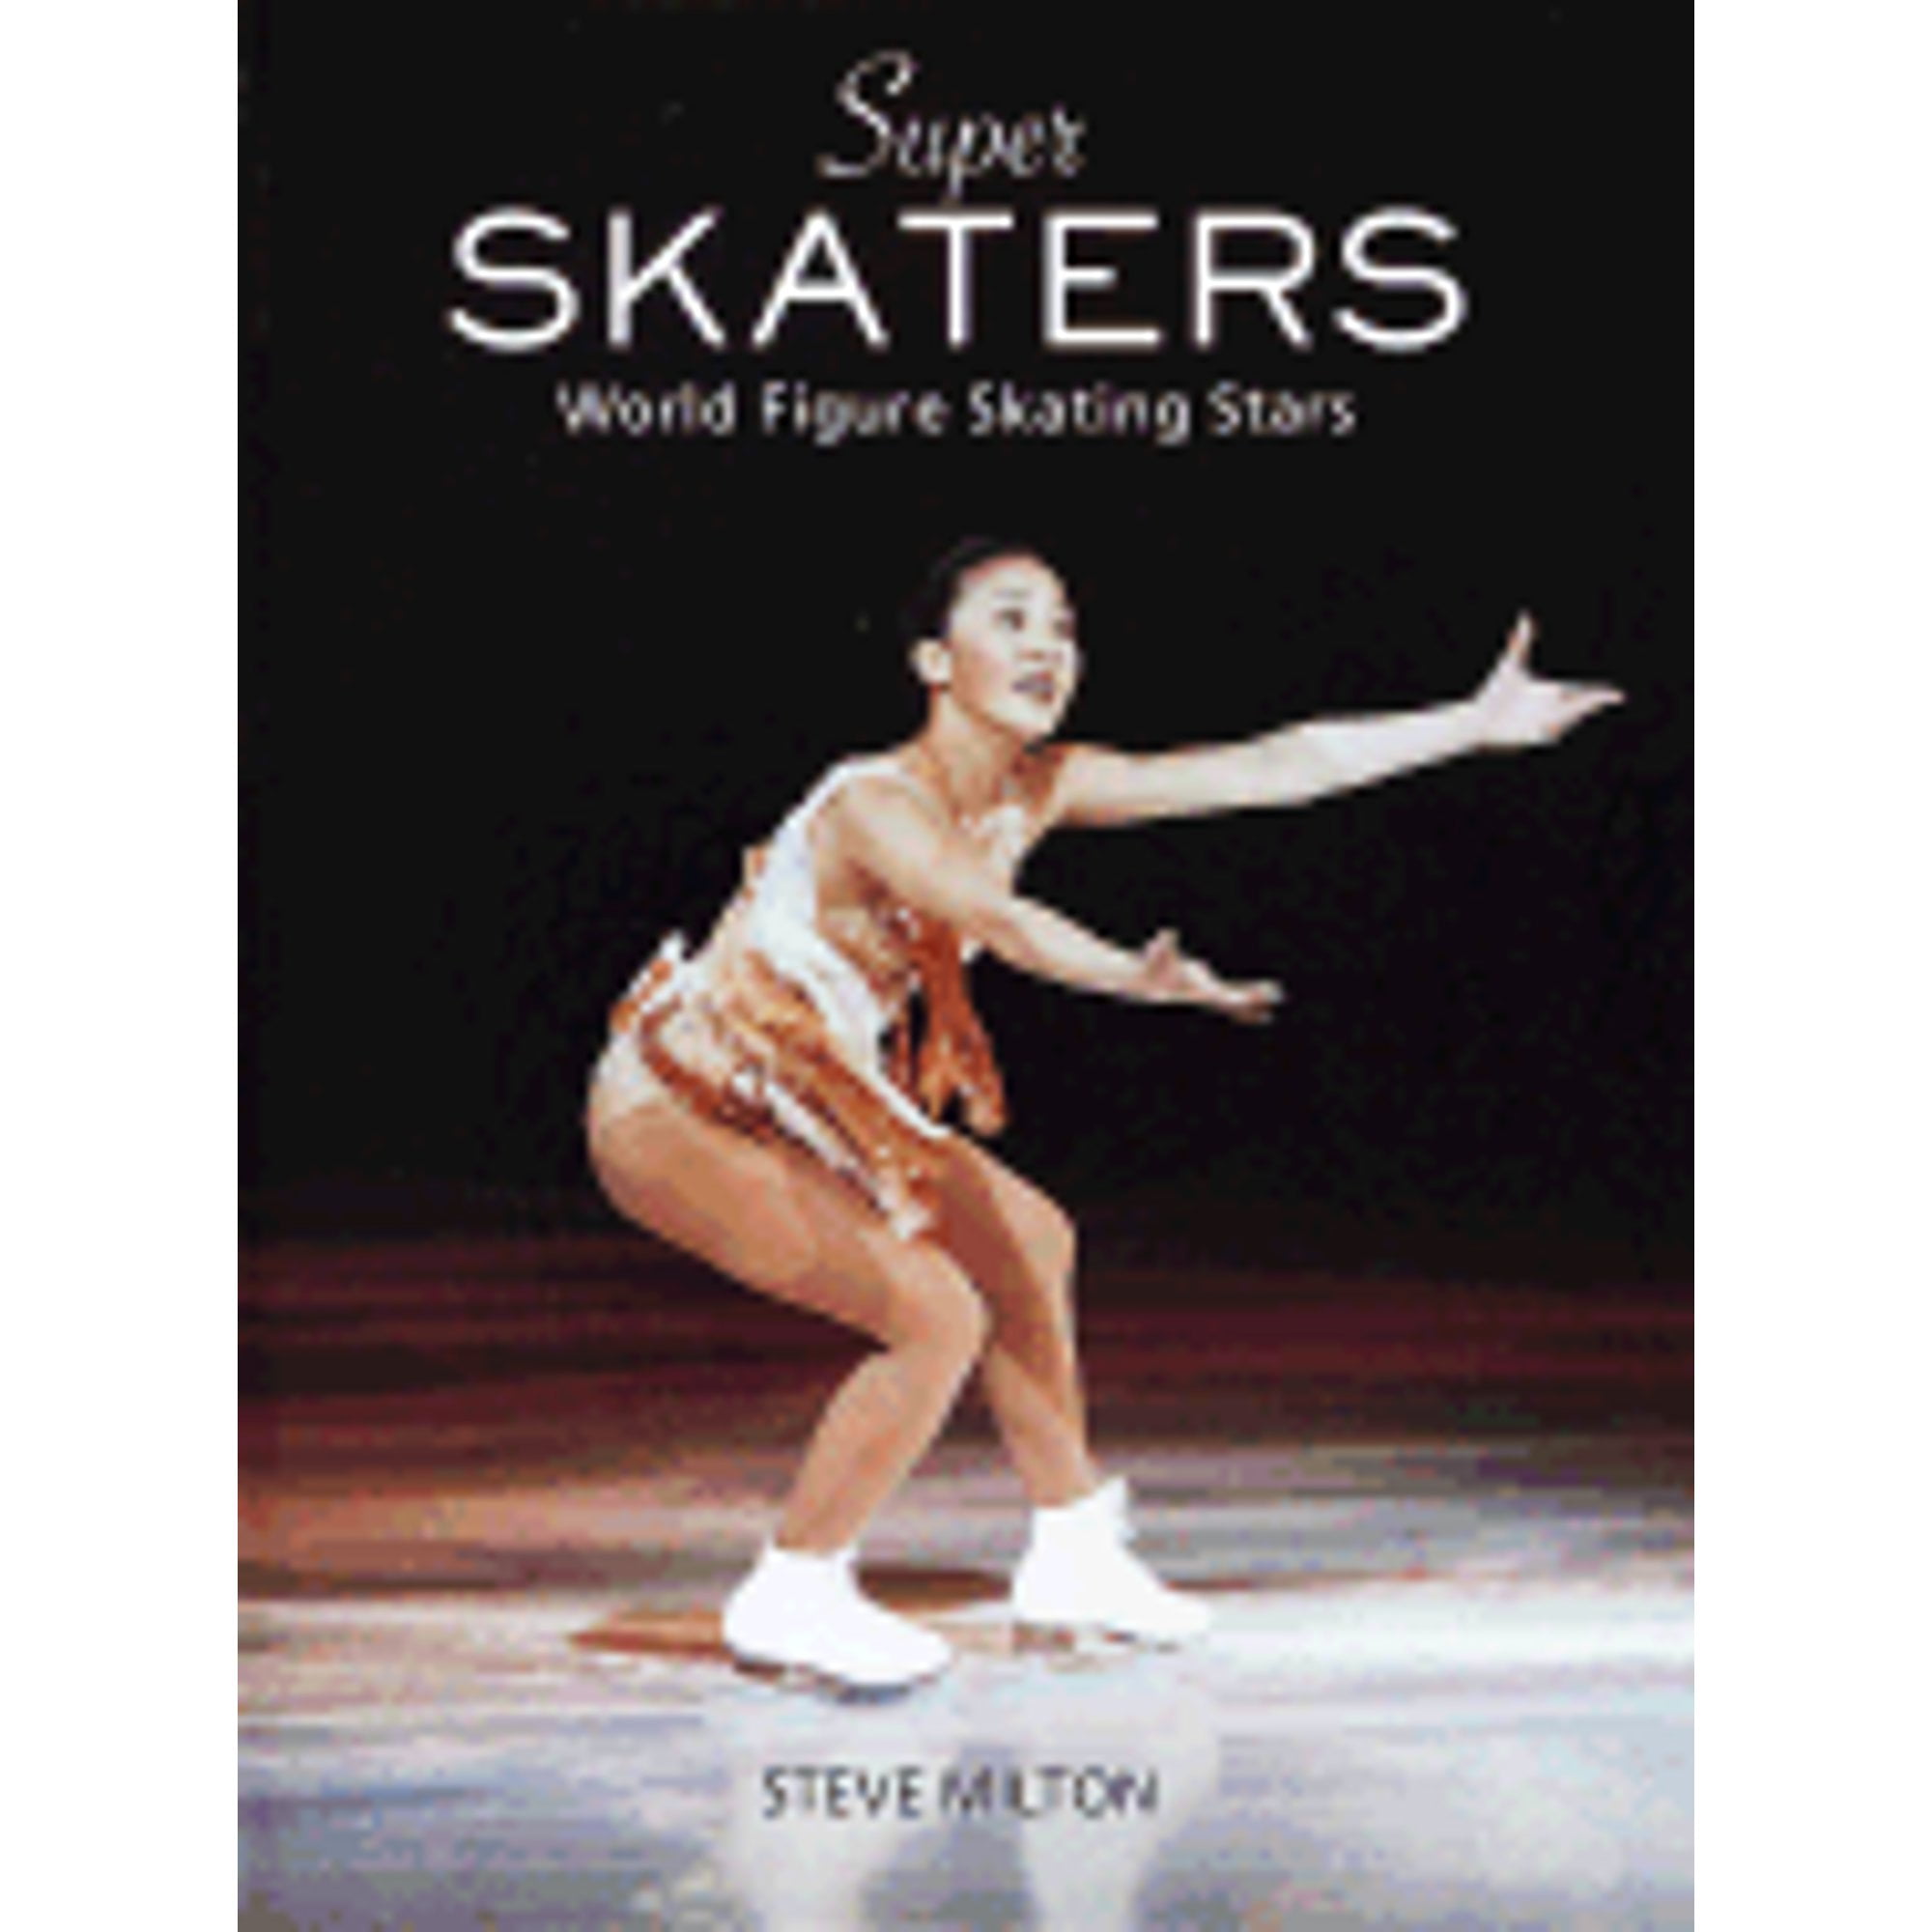 Pre-Owned Super Skaters: World Figure Skating Stars (Hardcover 9780517184820) by Steve Milton, Random House Value Publishing